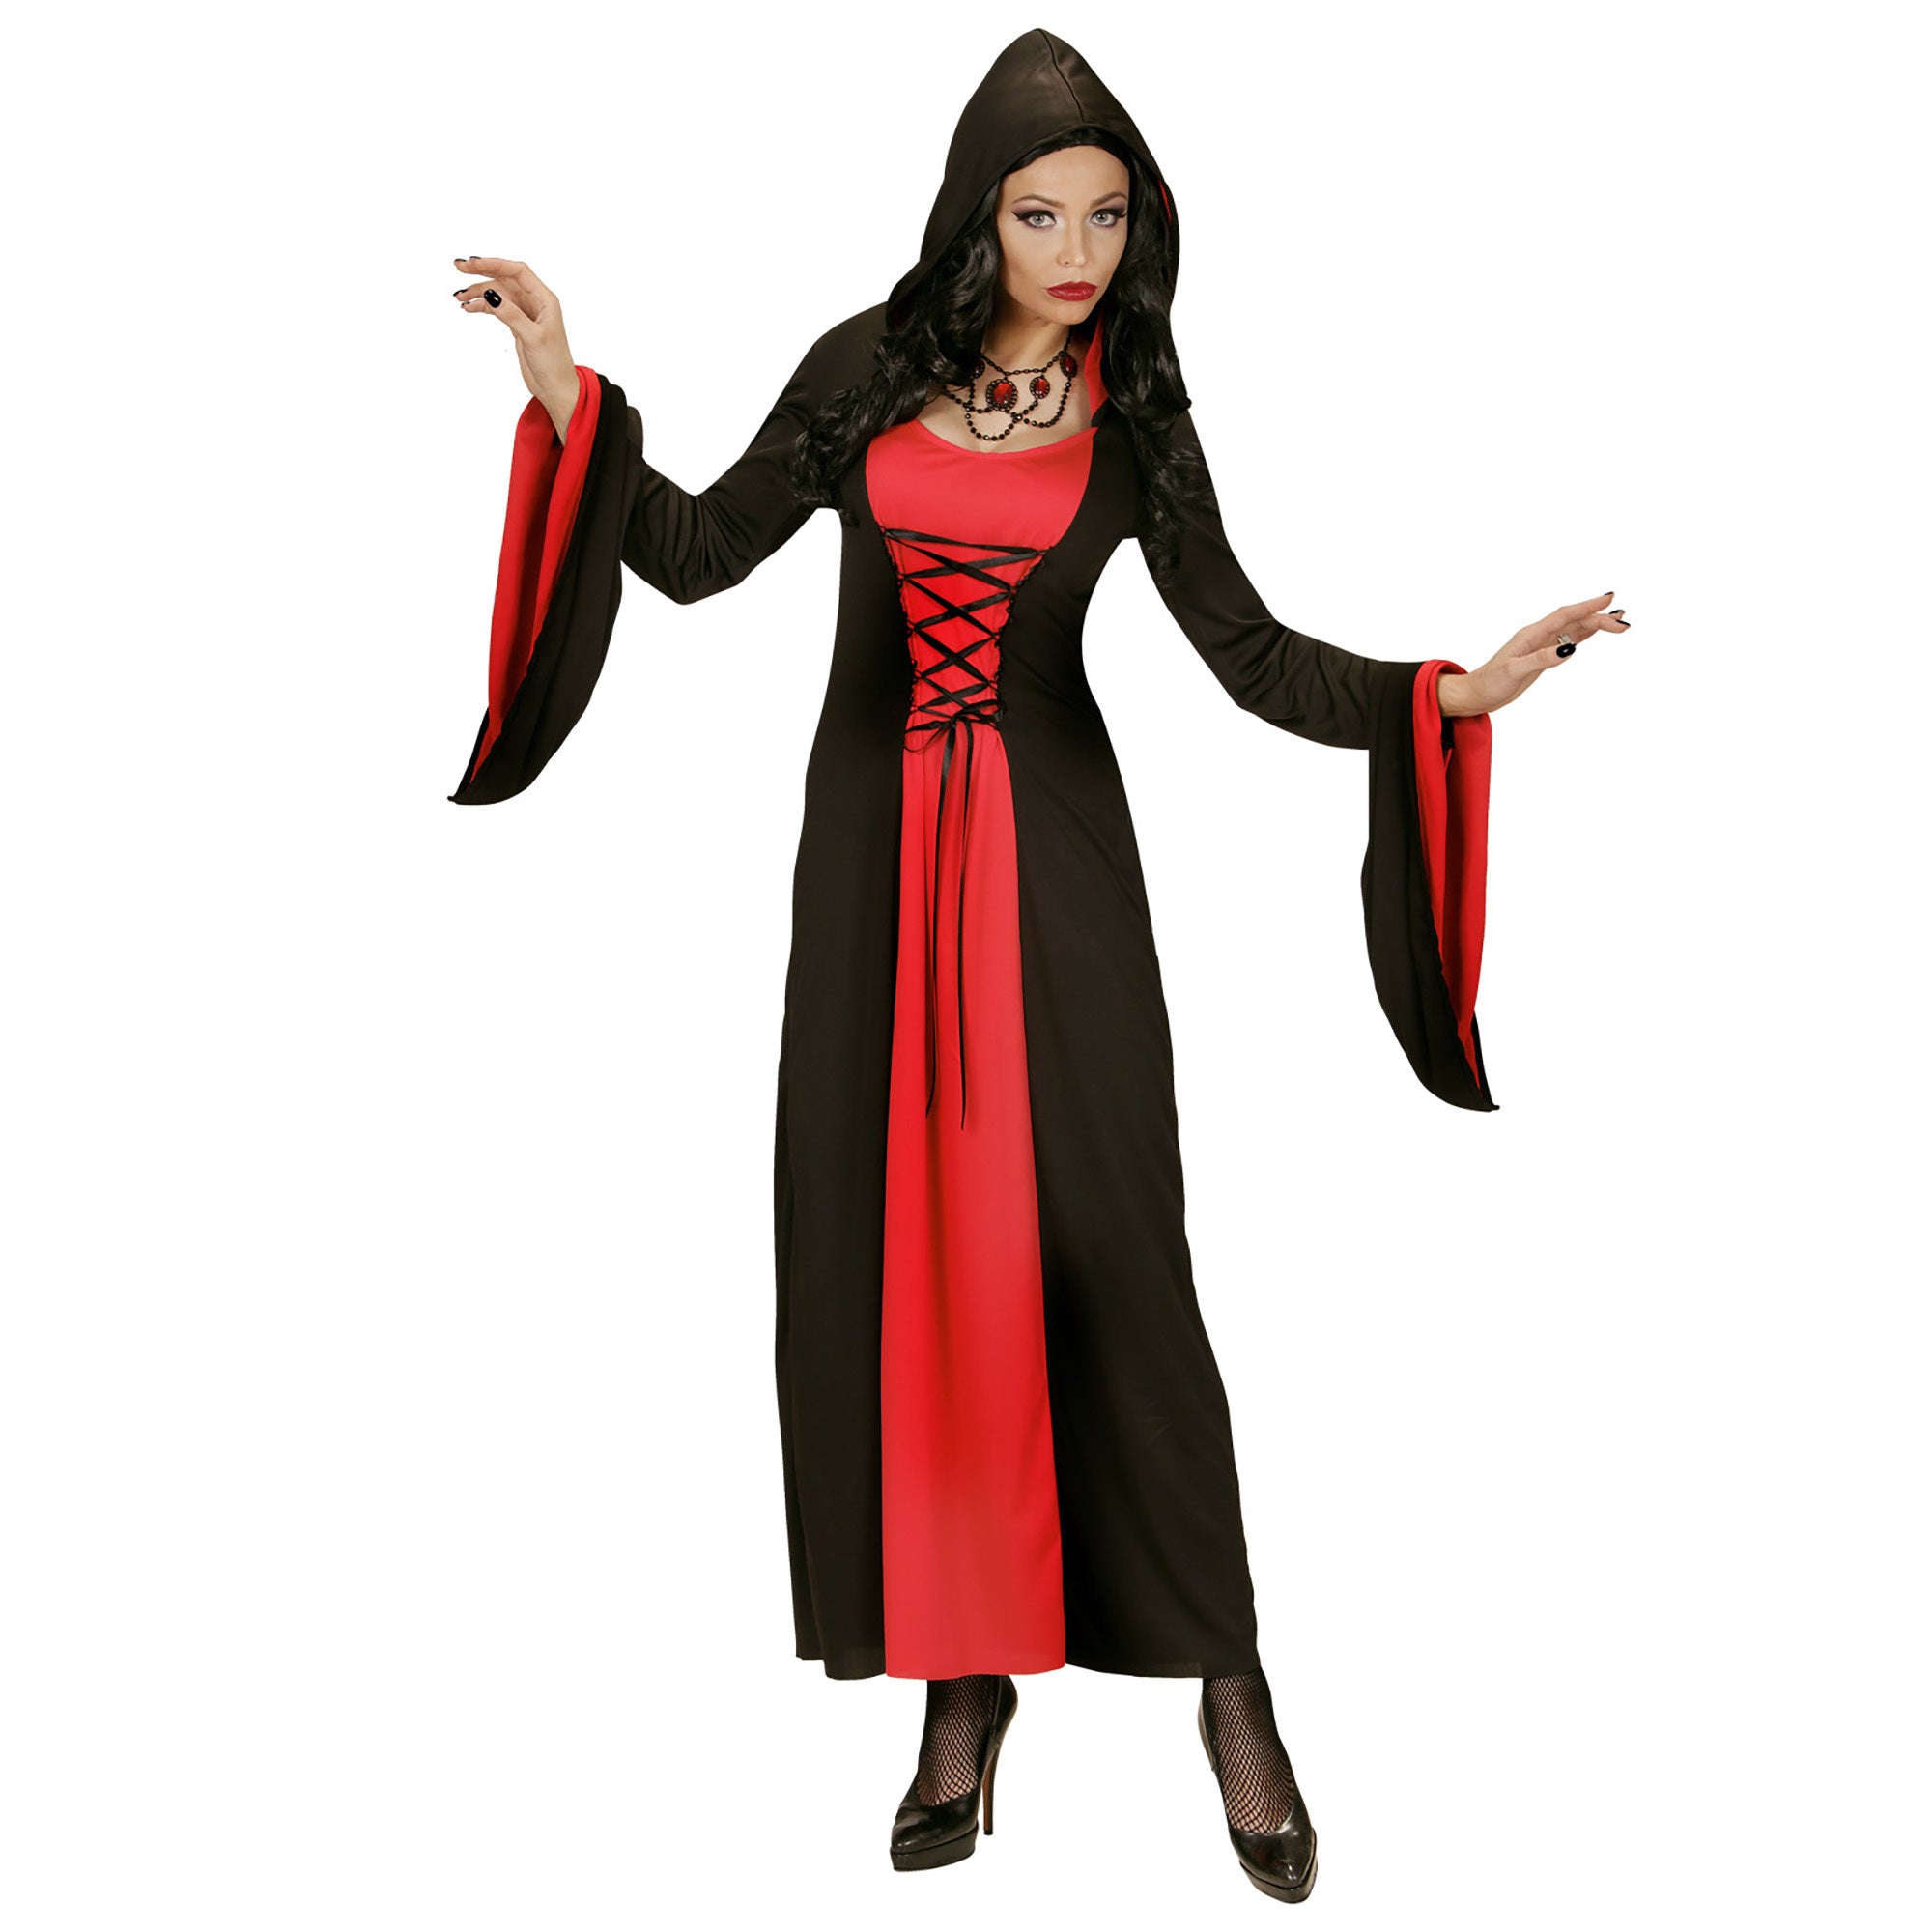 "Rood en zwart gravin kostuum met capuchon voor vrouwen - Verkleedkleding - XL"